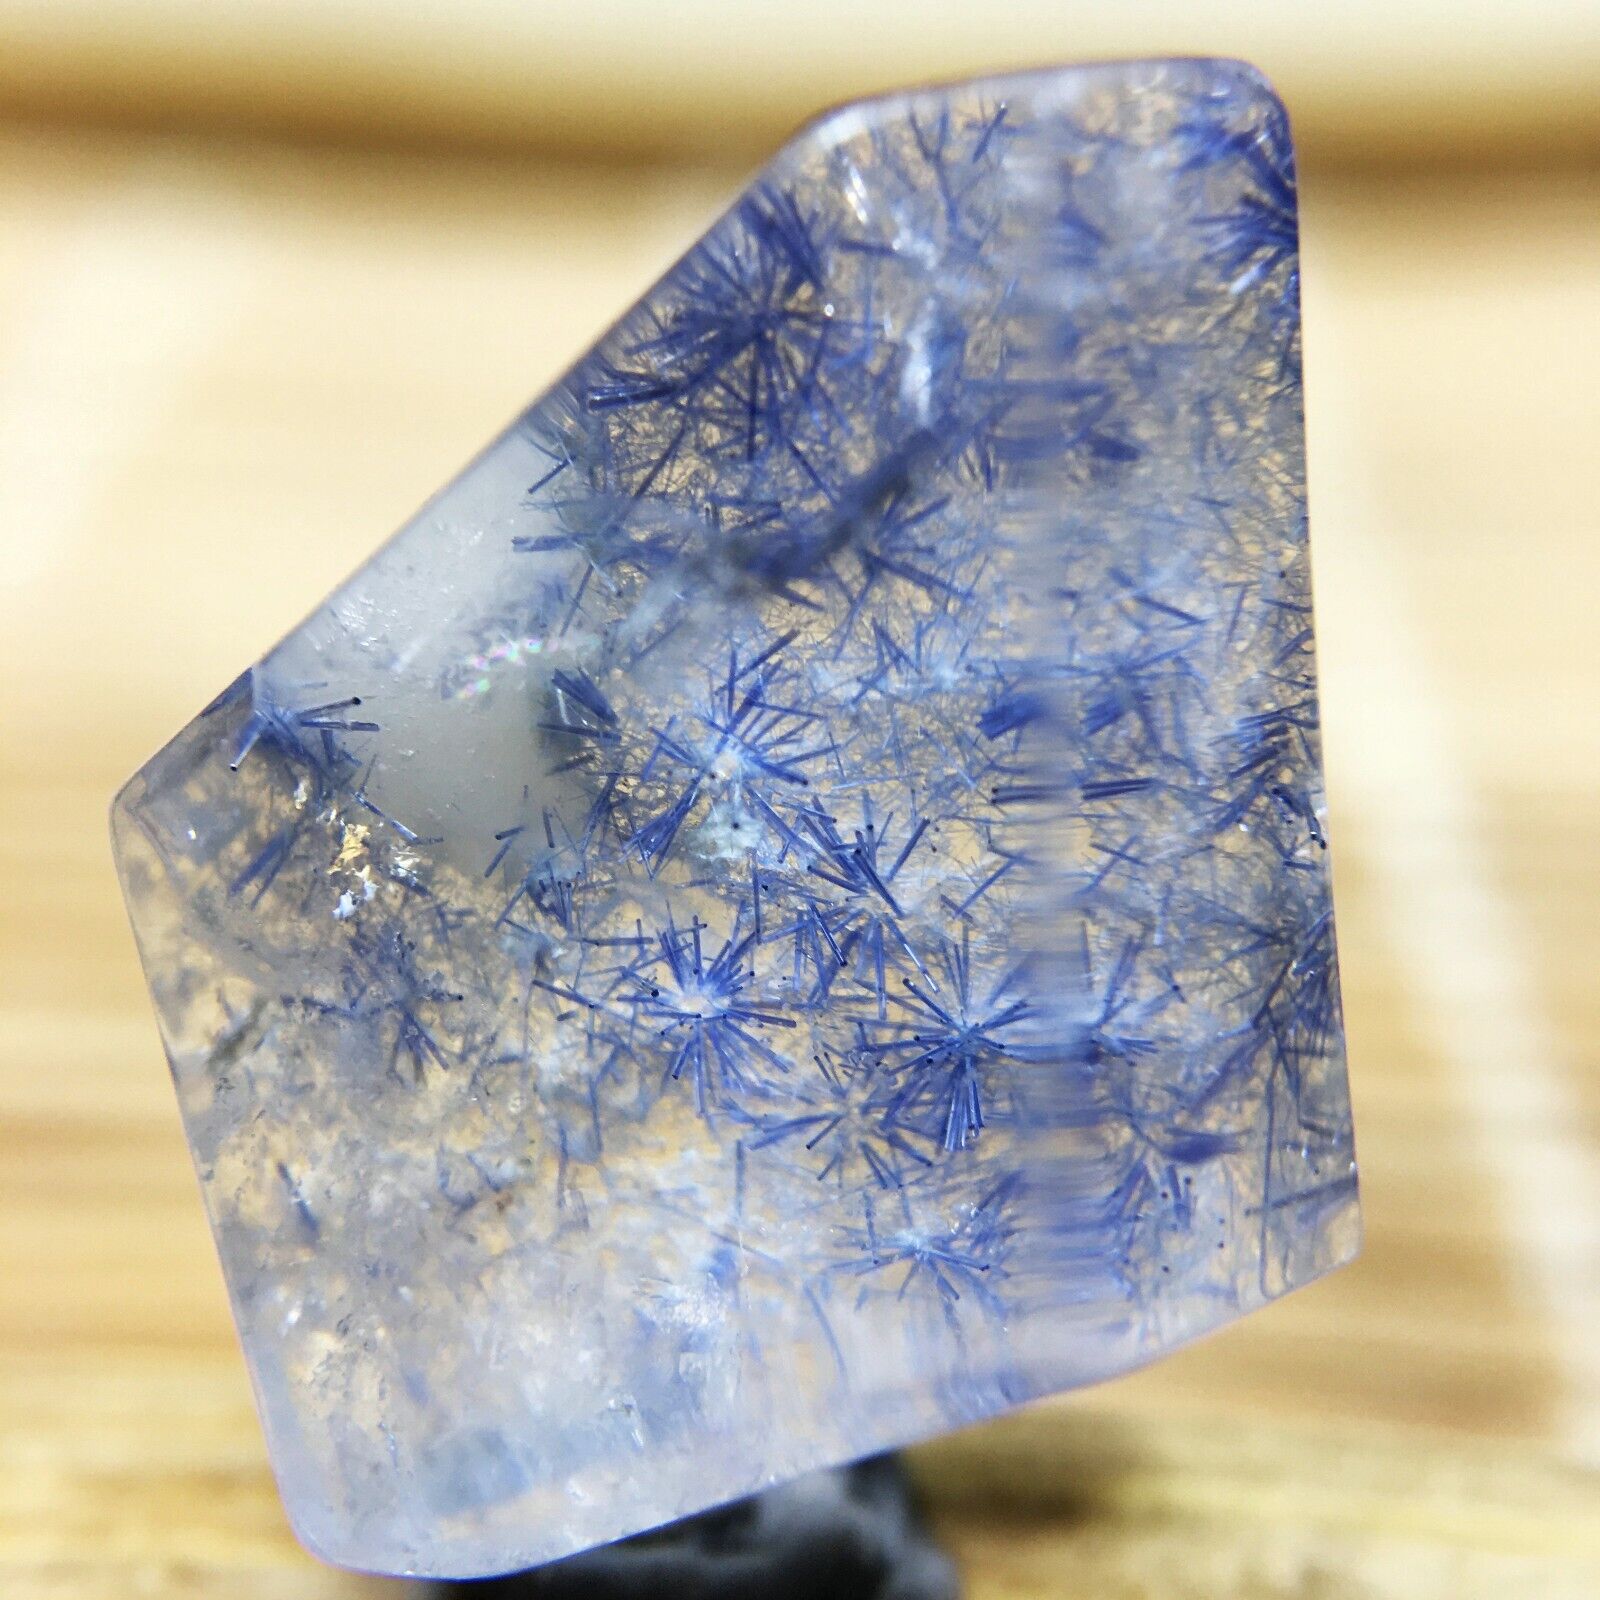 6.8Ct Very Rare NATURAL Beautiful Blue Dumortierite Quartz Crystal Specimen